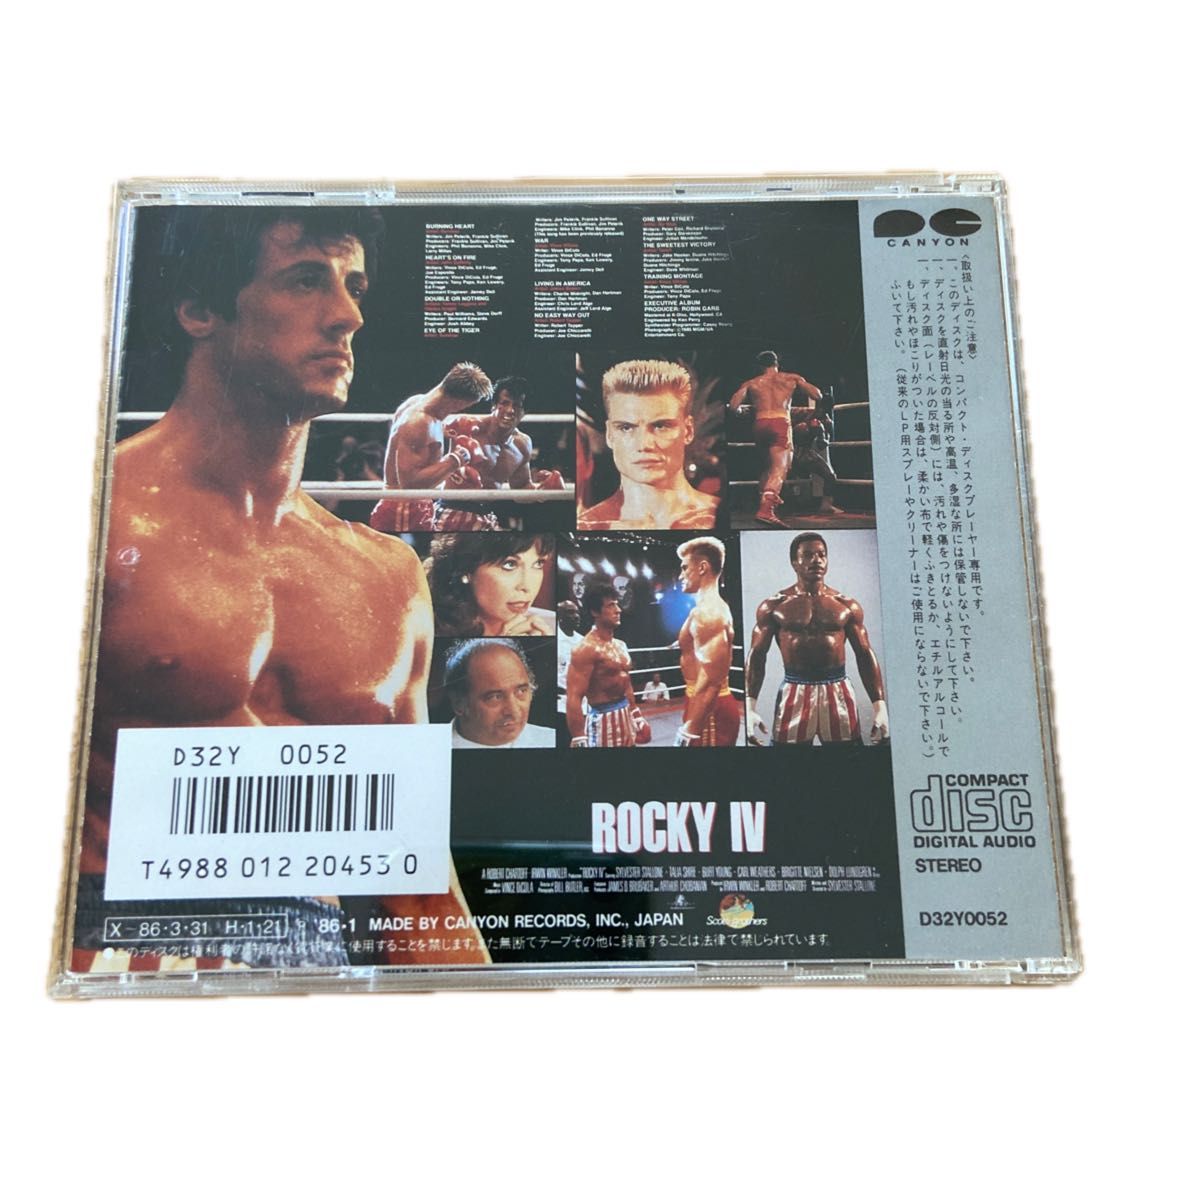 ロッキー4 オリジナルサウンドトラックCD